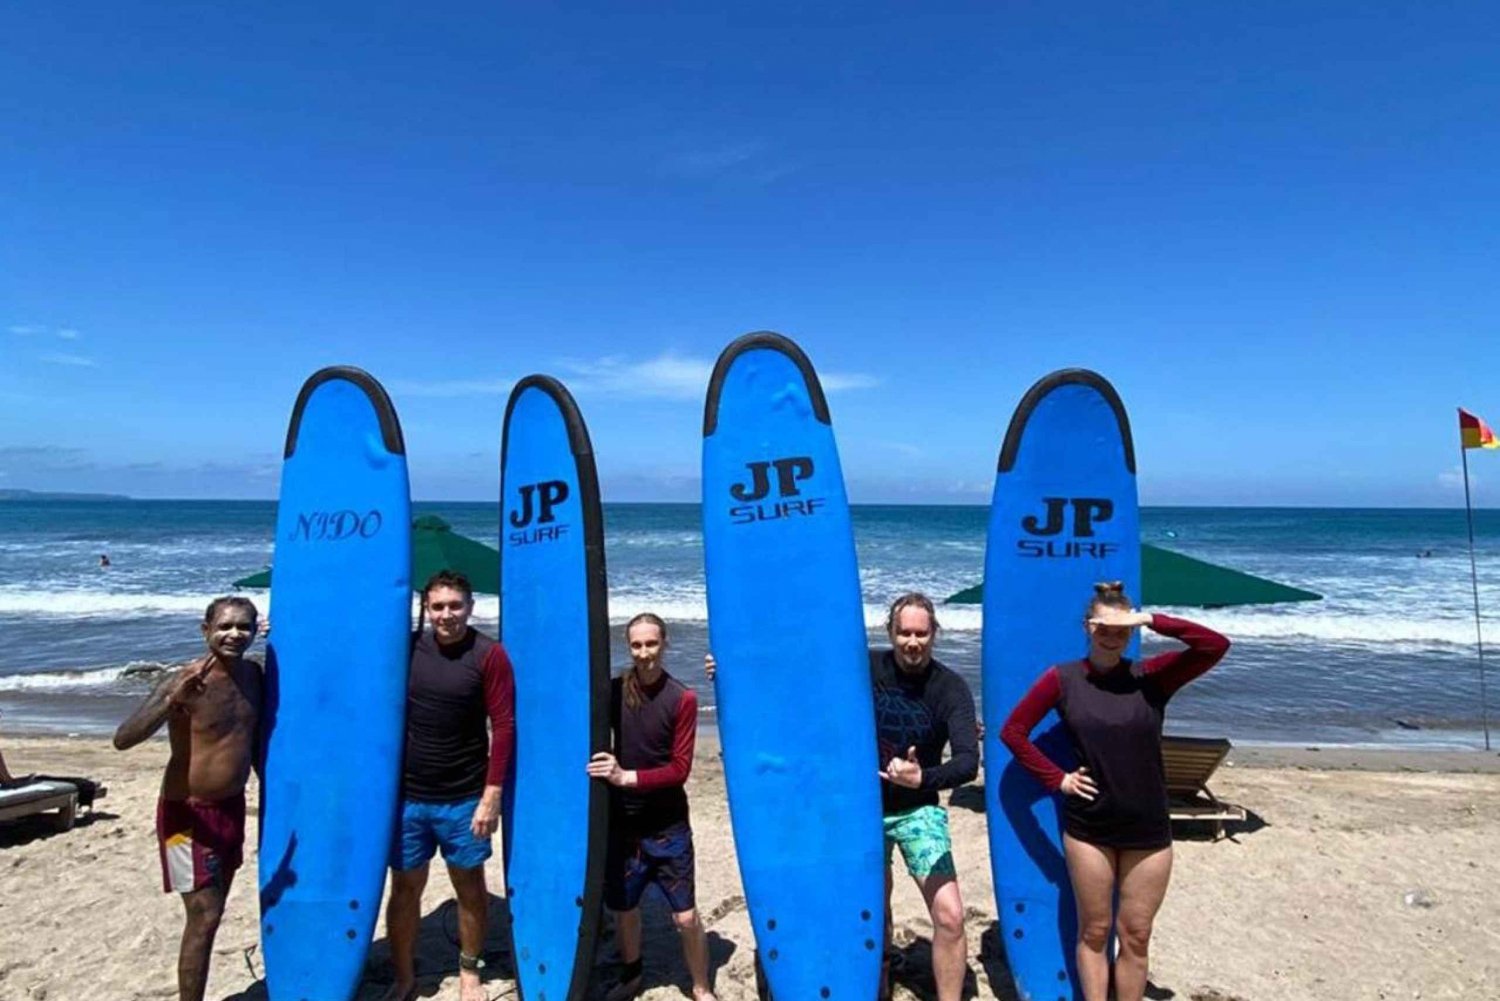 Aulas de surfe em Kuta: 2 horas de aula de surfe